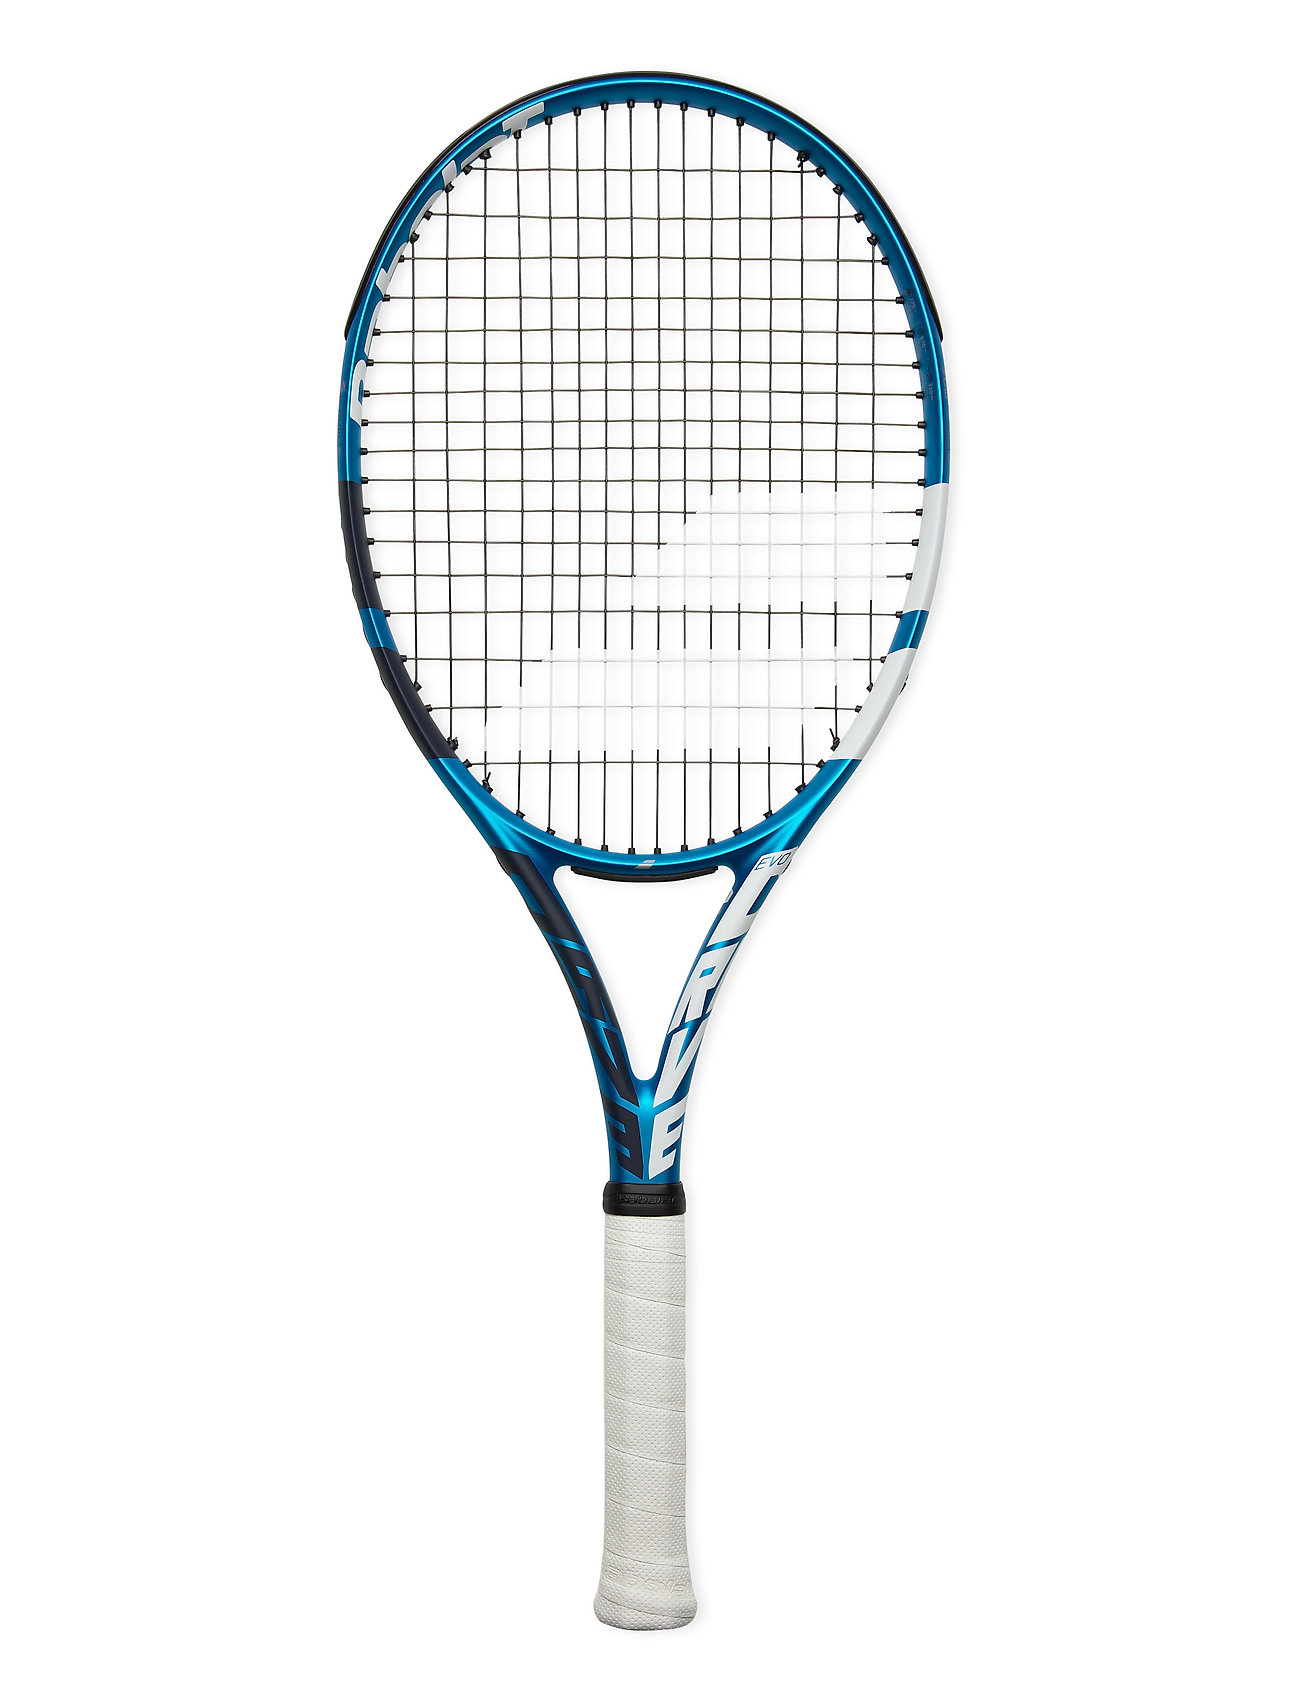 Evo Drive Strung Accessories Sports Equipment Rackets & Equipment Tennis Rackets Sininen Babolat